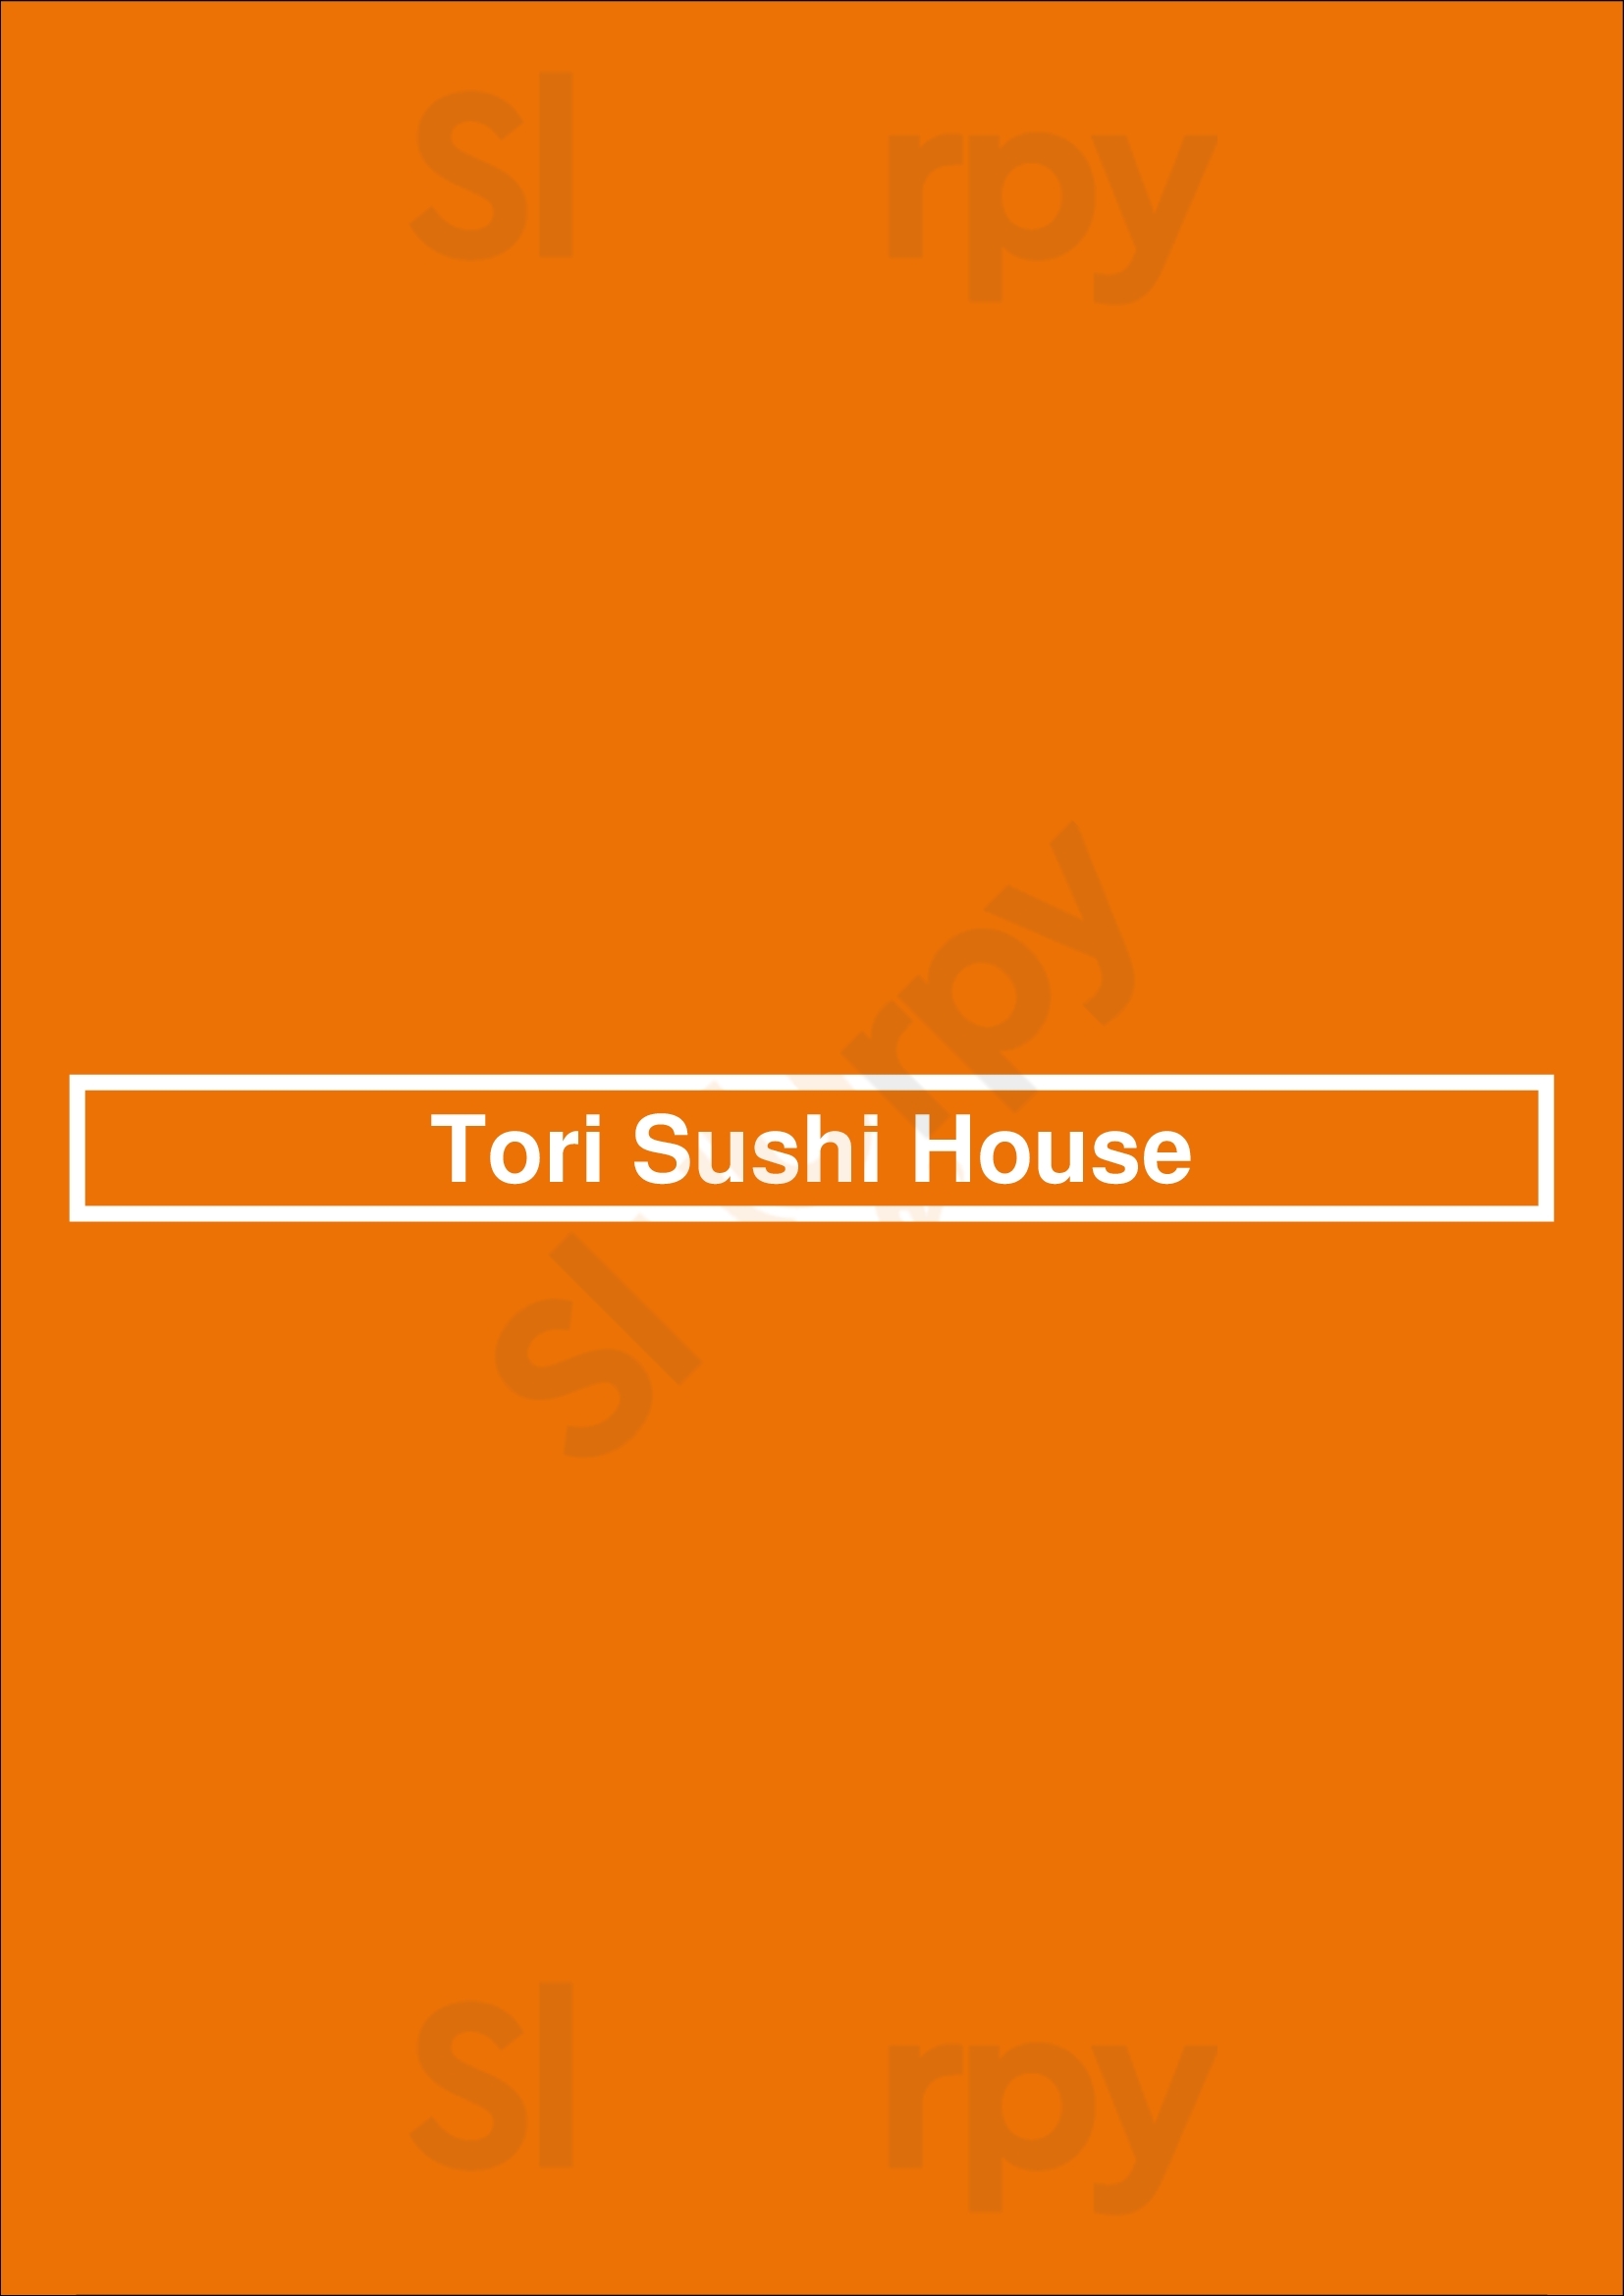 Tori Sushi House Porto Menu - 1